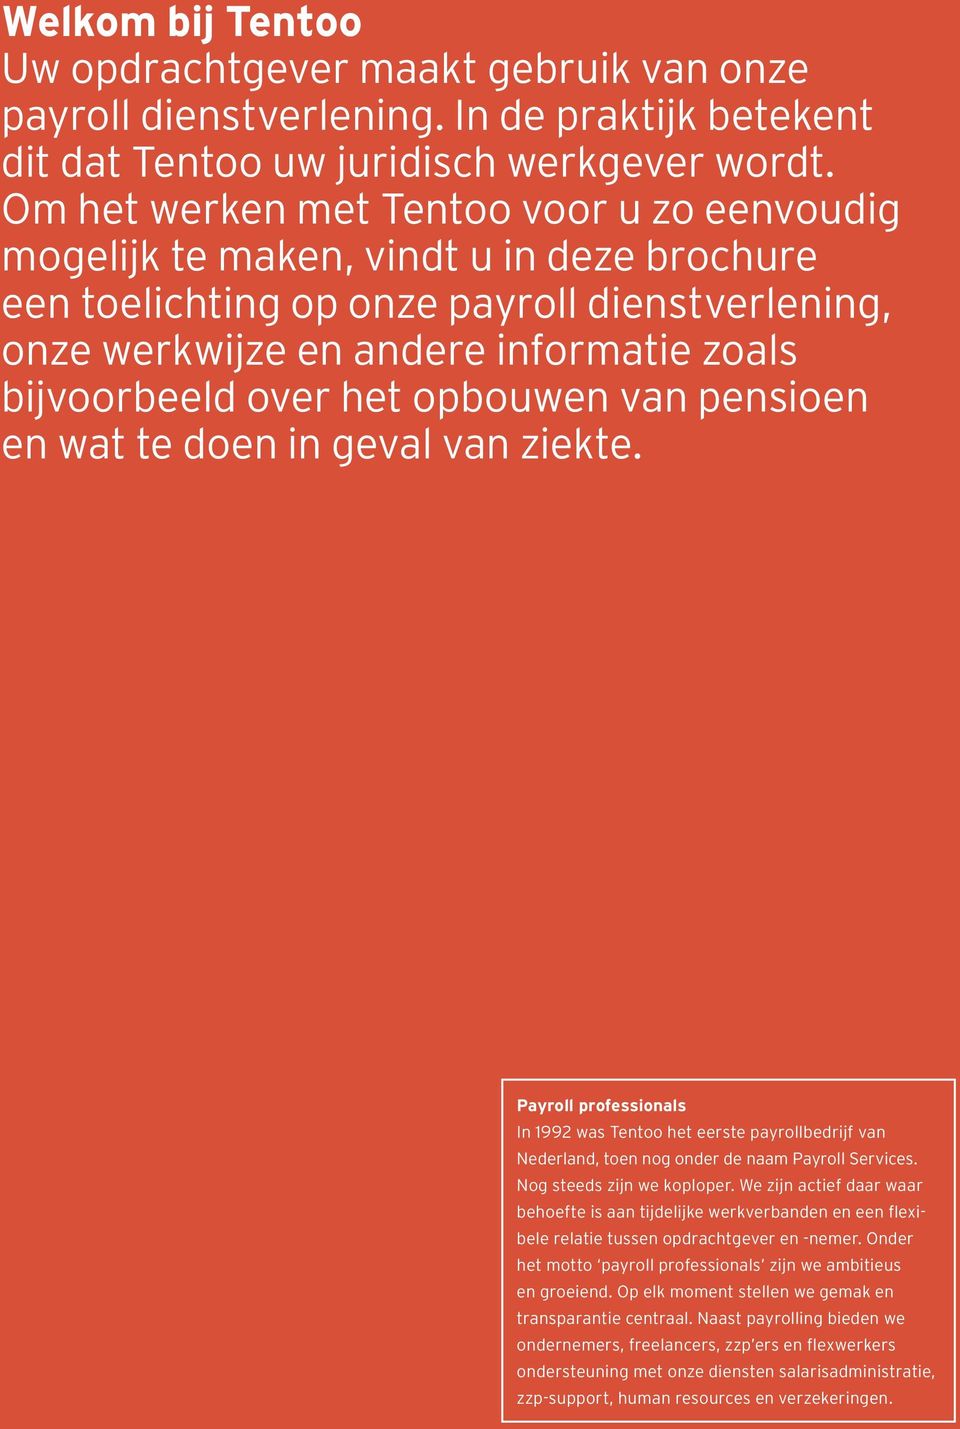 het opbouwen van pensioen en wat te doen in geval van ziekte. Payroll professionals In 1992 was Tentoo het eerste payrollbedrijf van Nederland, toen nog onder de naam Payroll Services.